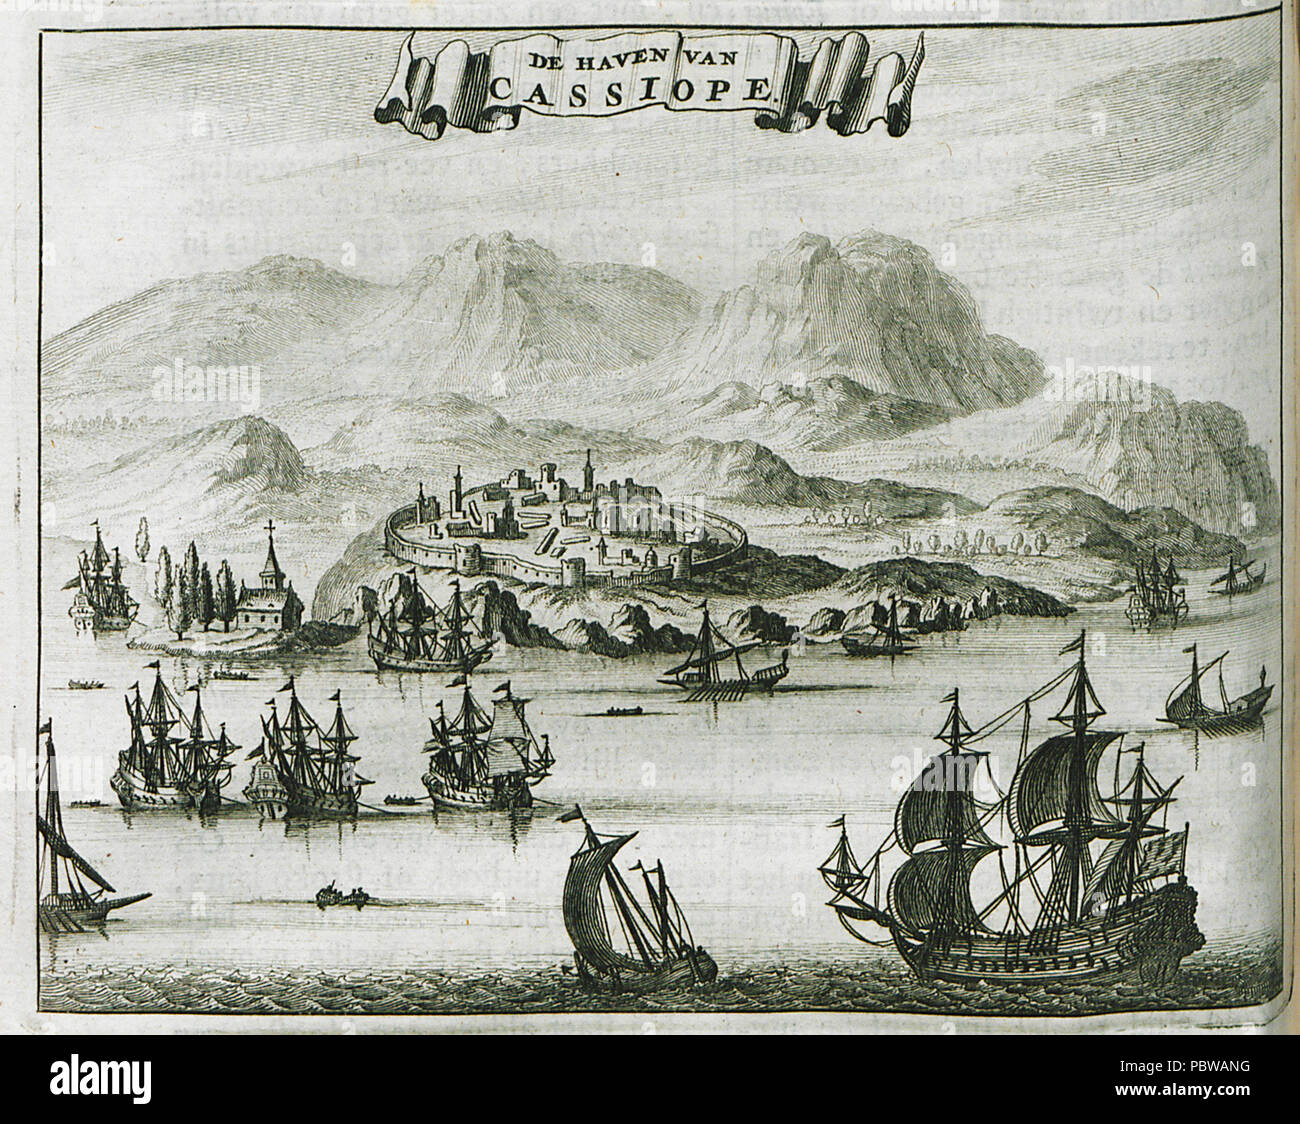 155 De Haven van Cassiope - Dapper Olfert - 1688 Stock Photo